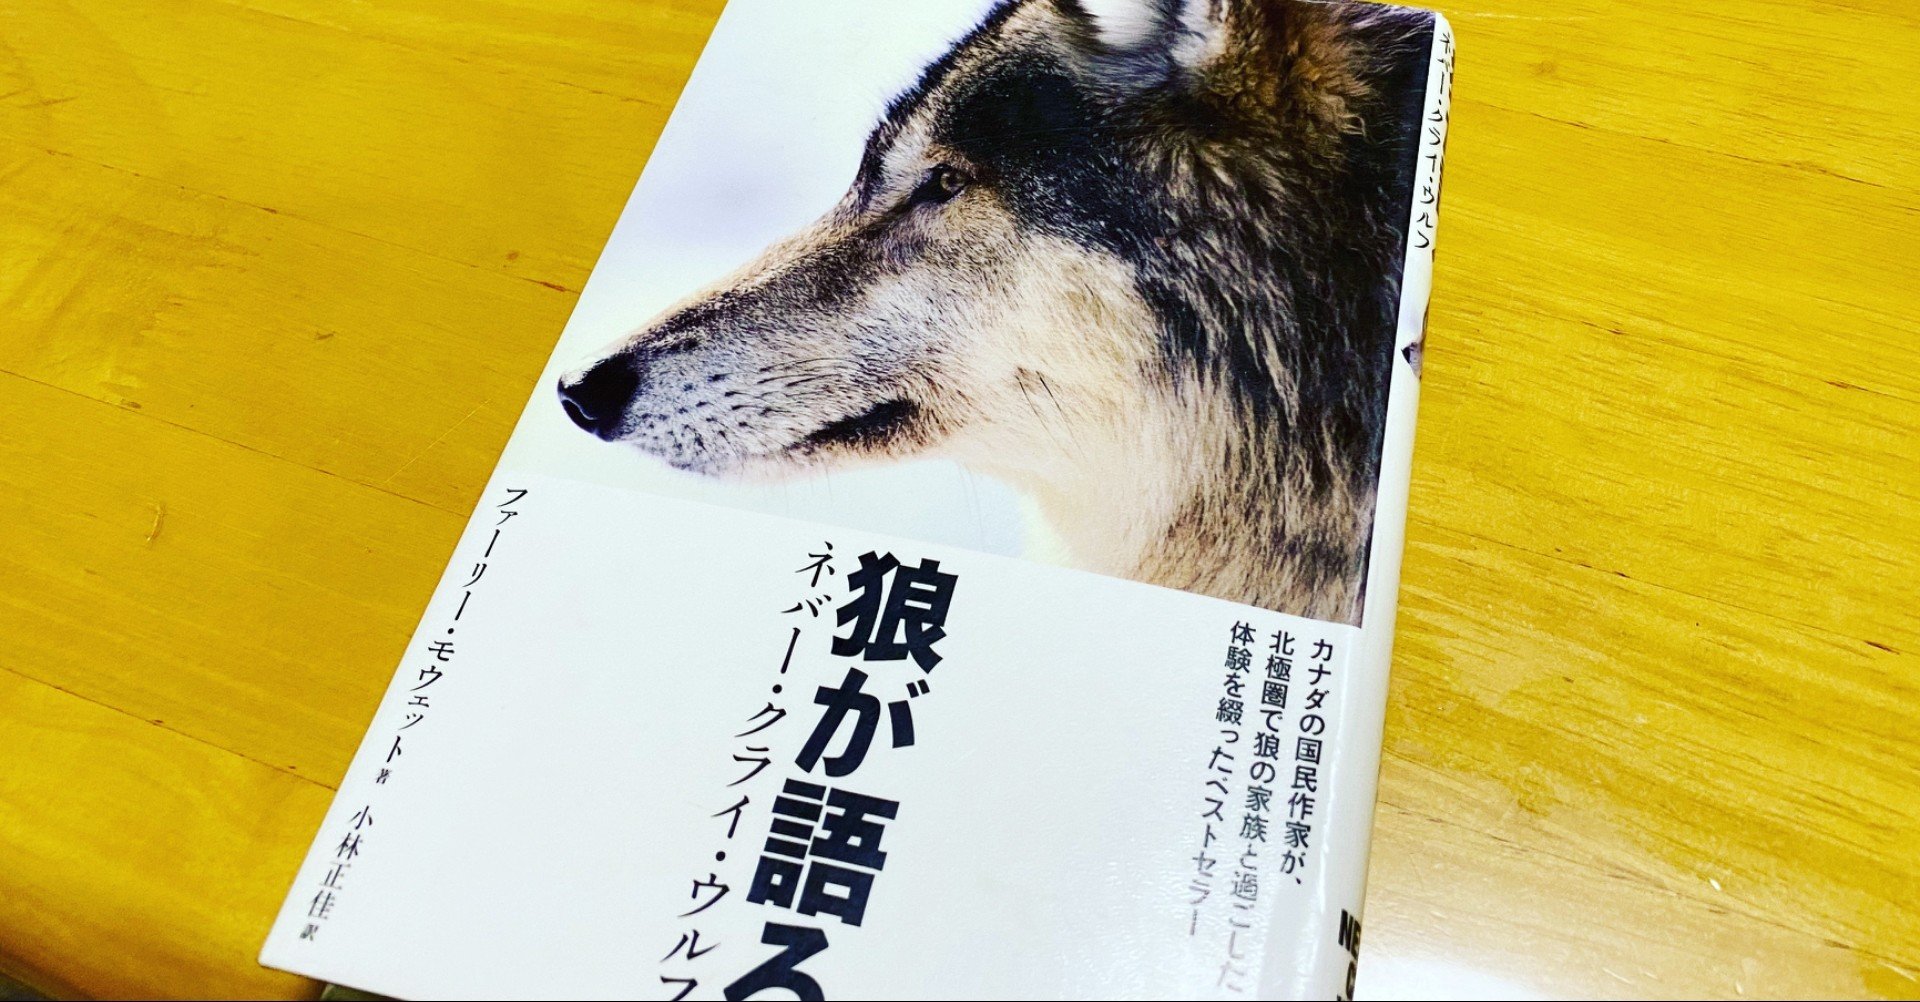 カナダの国民作家による狼のイメージを覆した一冊 狼が語る カナダのベストセラー イズミタ マサヒコ Masahiko Izumita 絵 英語 ニュージーオンライン留学のためのieltsトライ Note